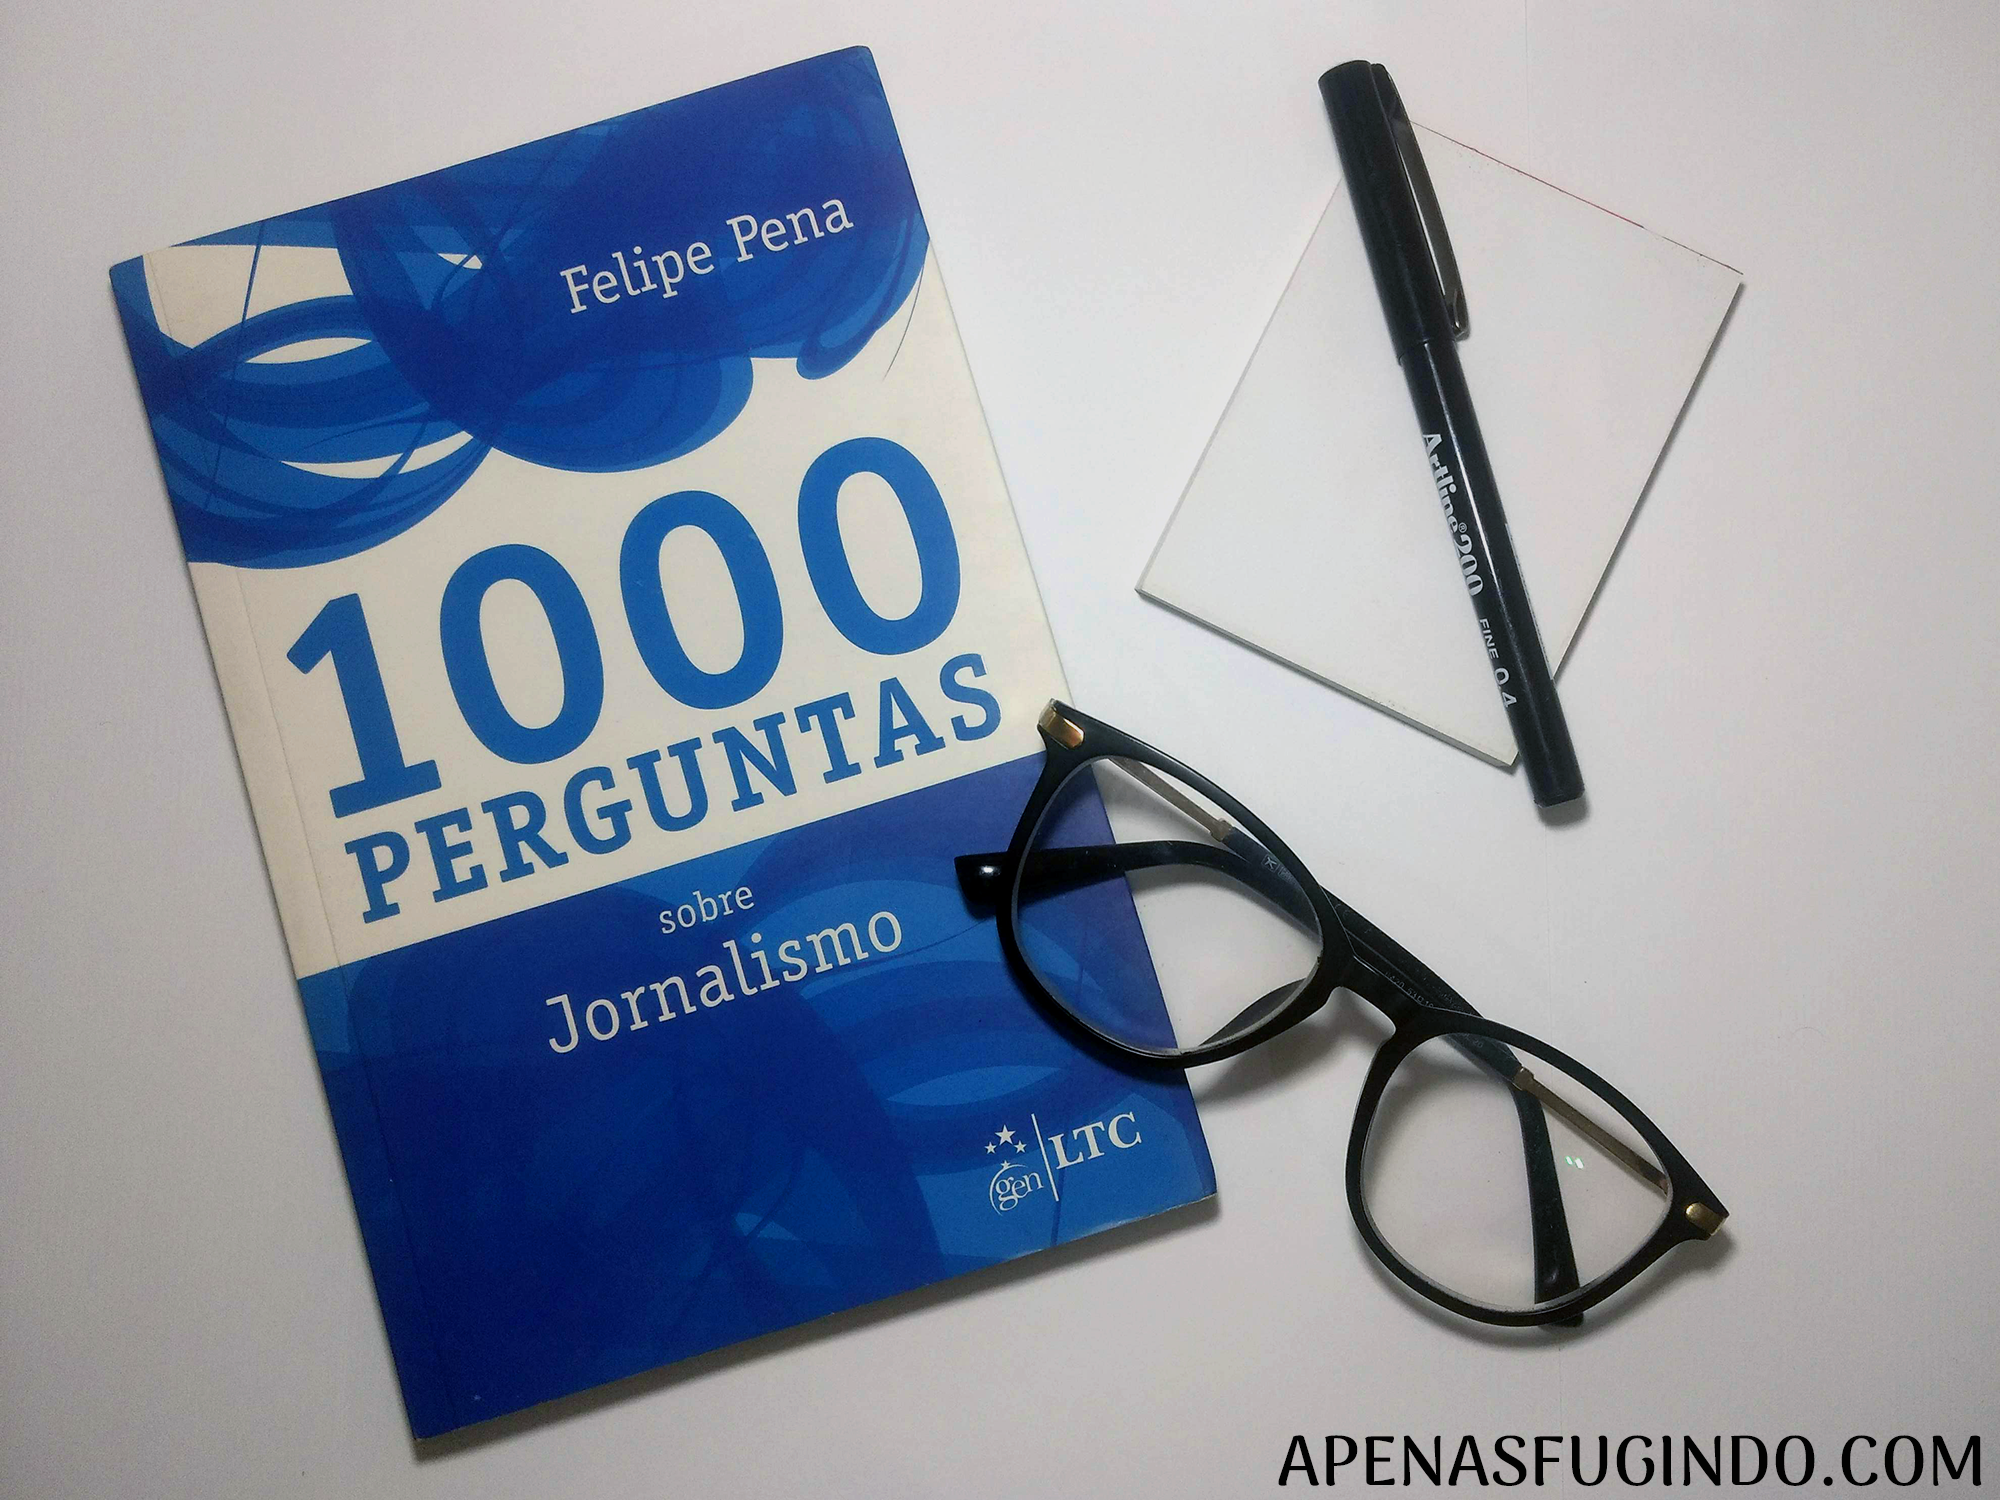 1000 perguntas sobre jornalismo felipe pena